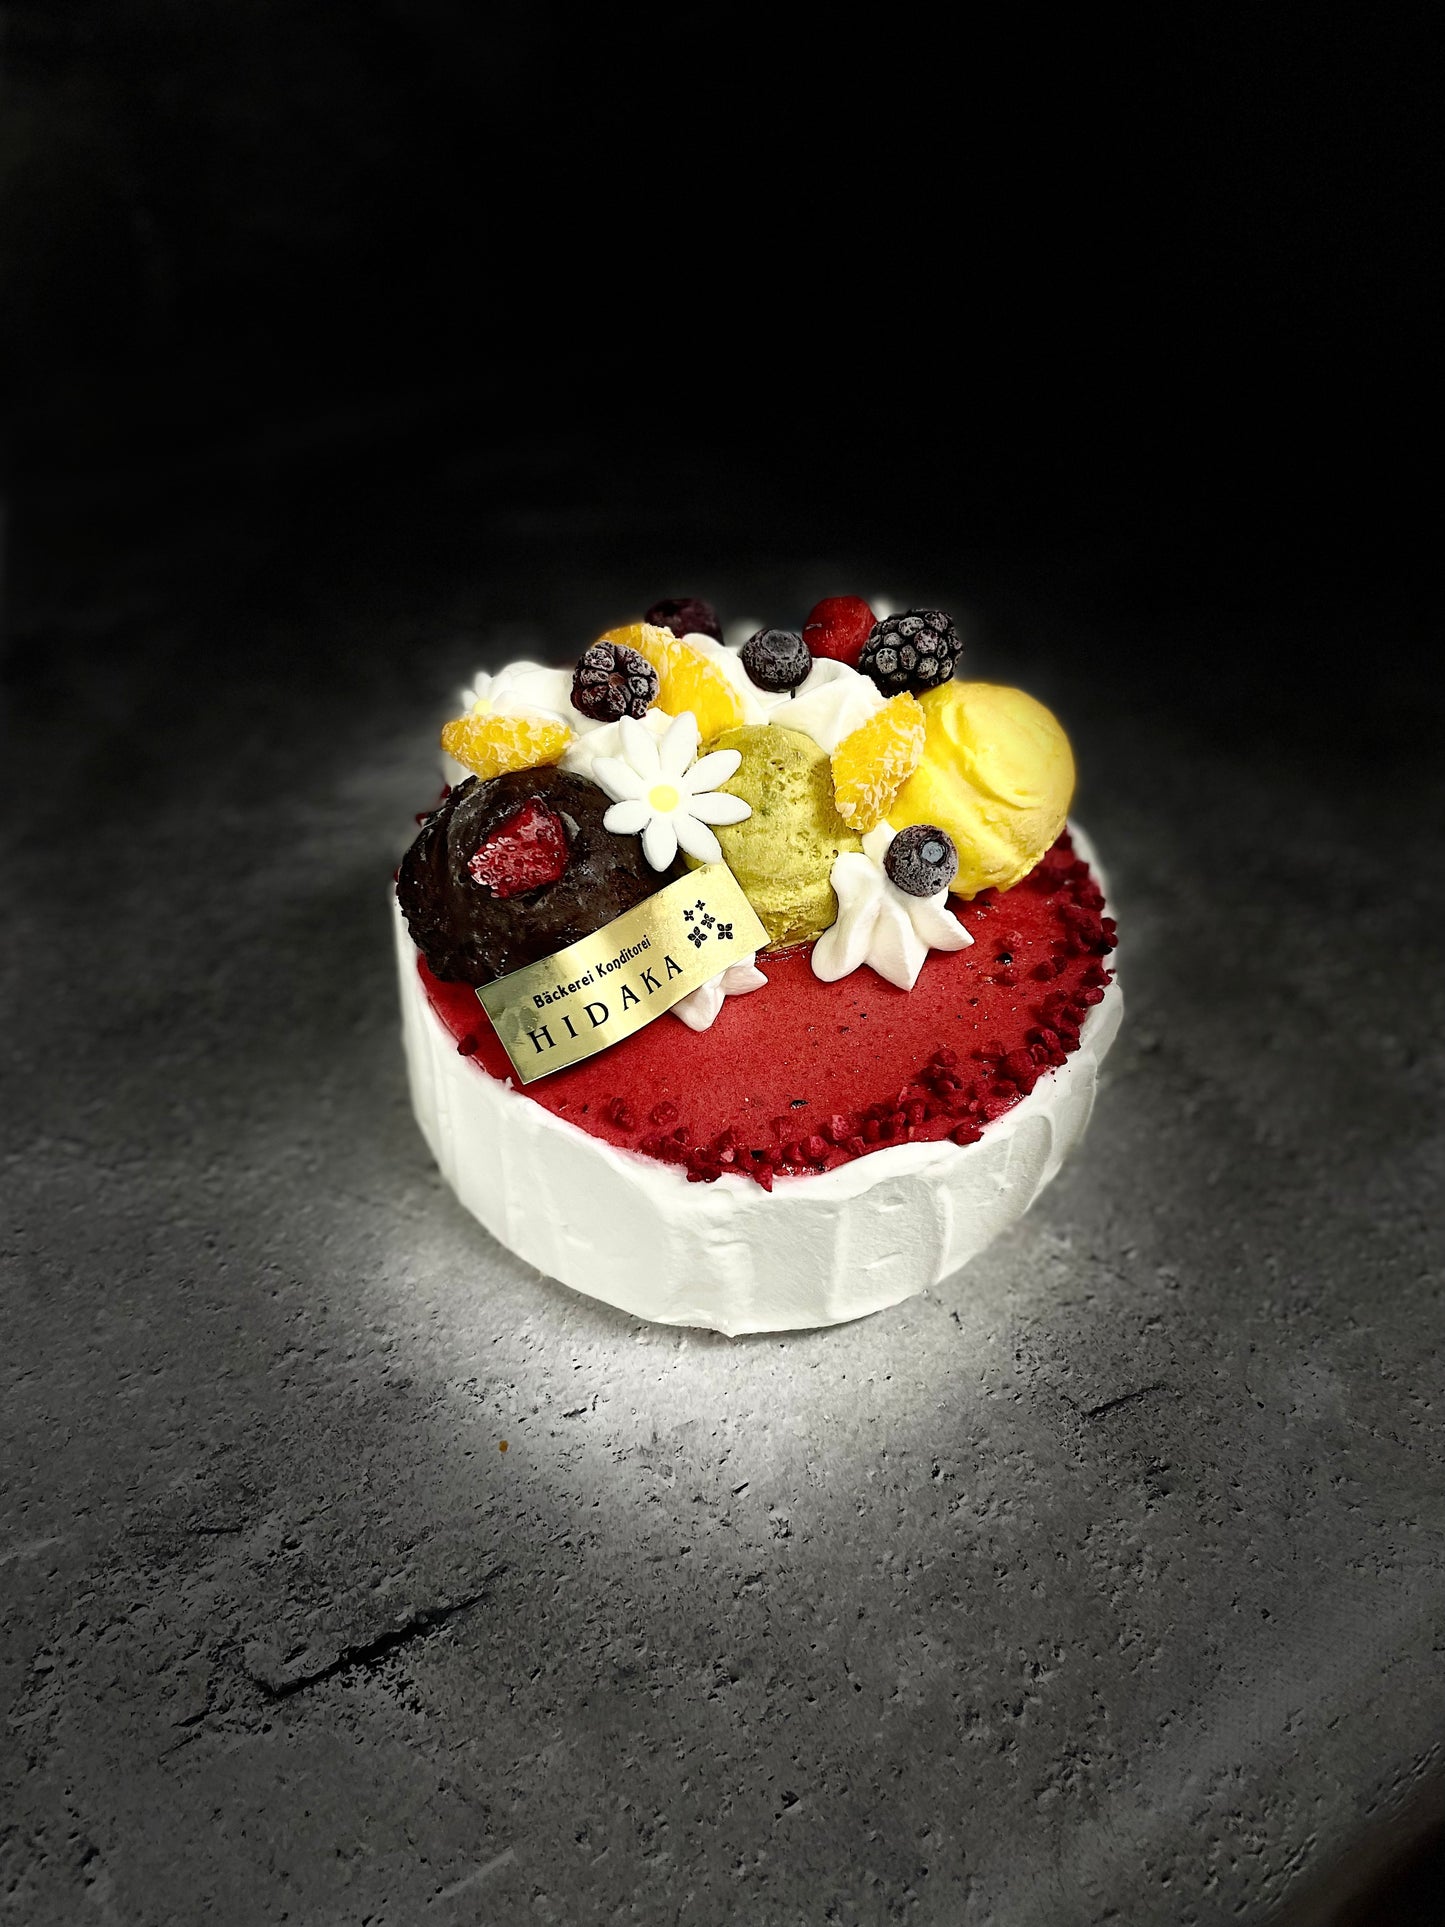 【冷凍発送】HIDAKAのオーダージェラートケーキ「ミックスベリーのアイスケーキ」